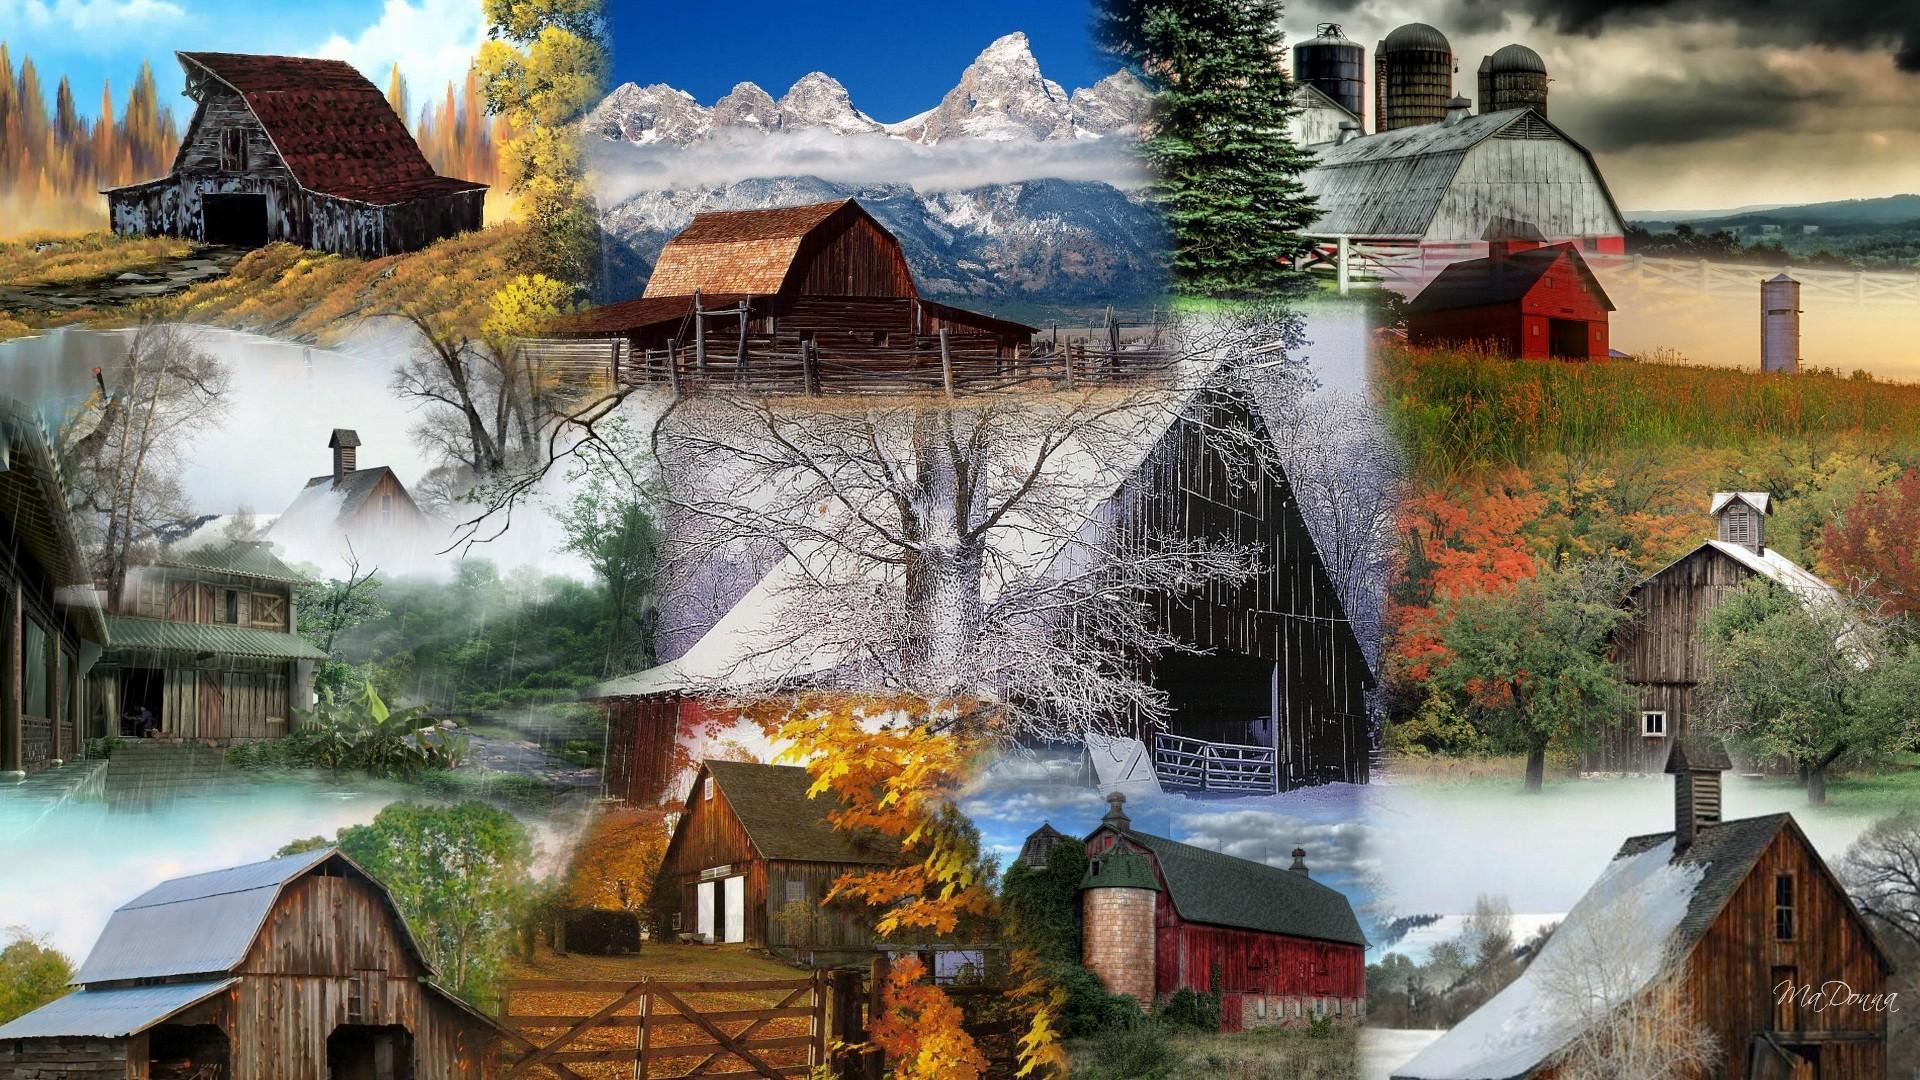 Barn Collage HD desktop wallpaper, Widescreen, High Definition